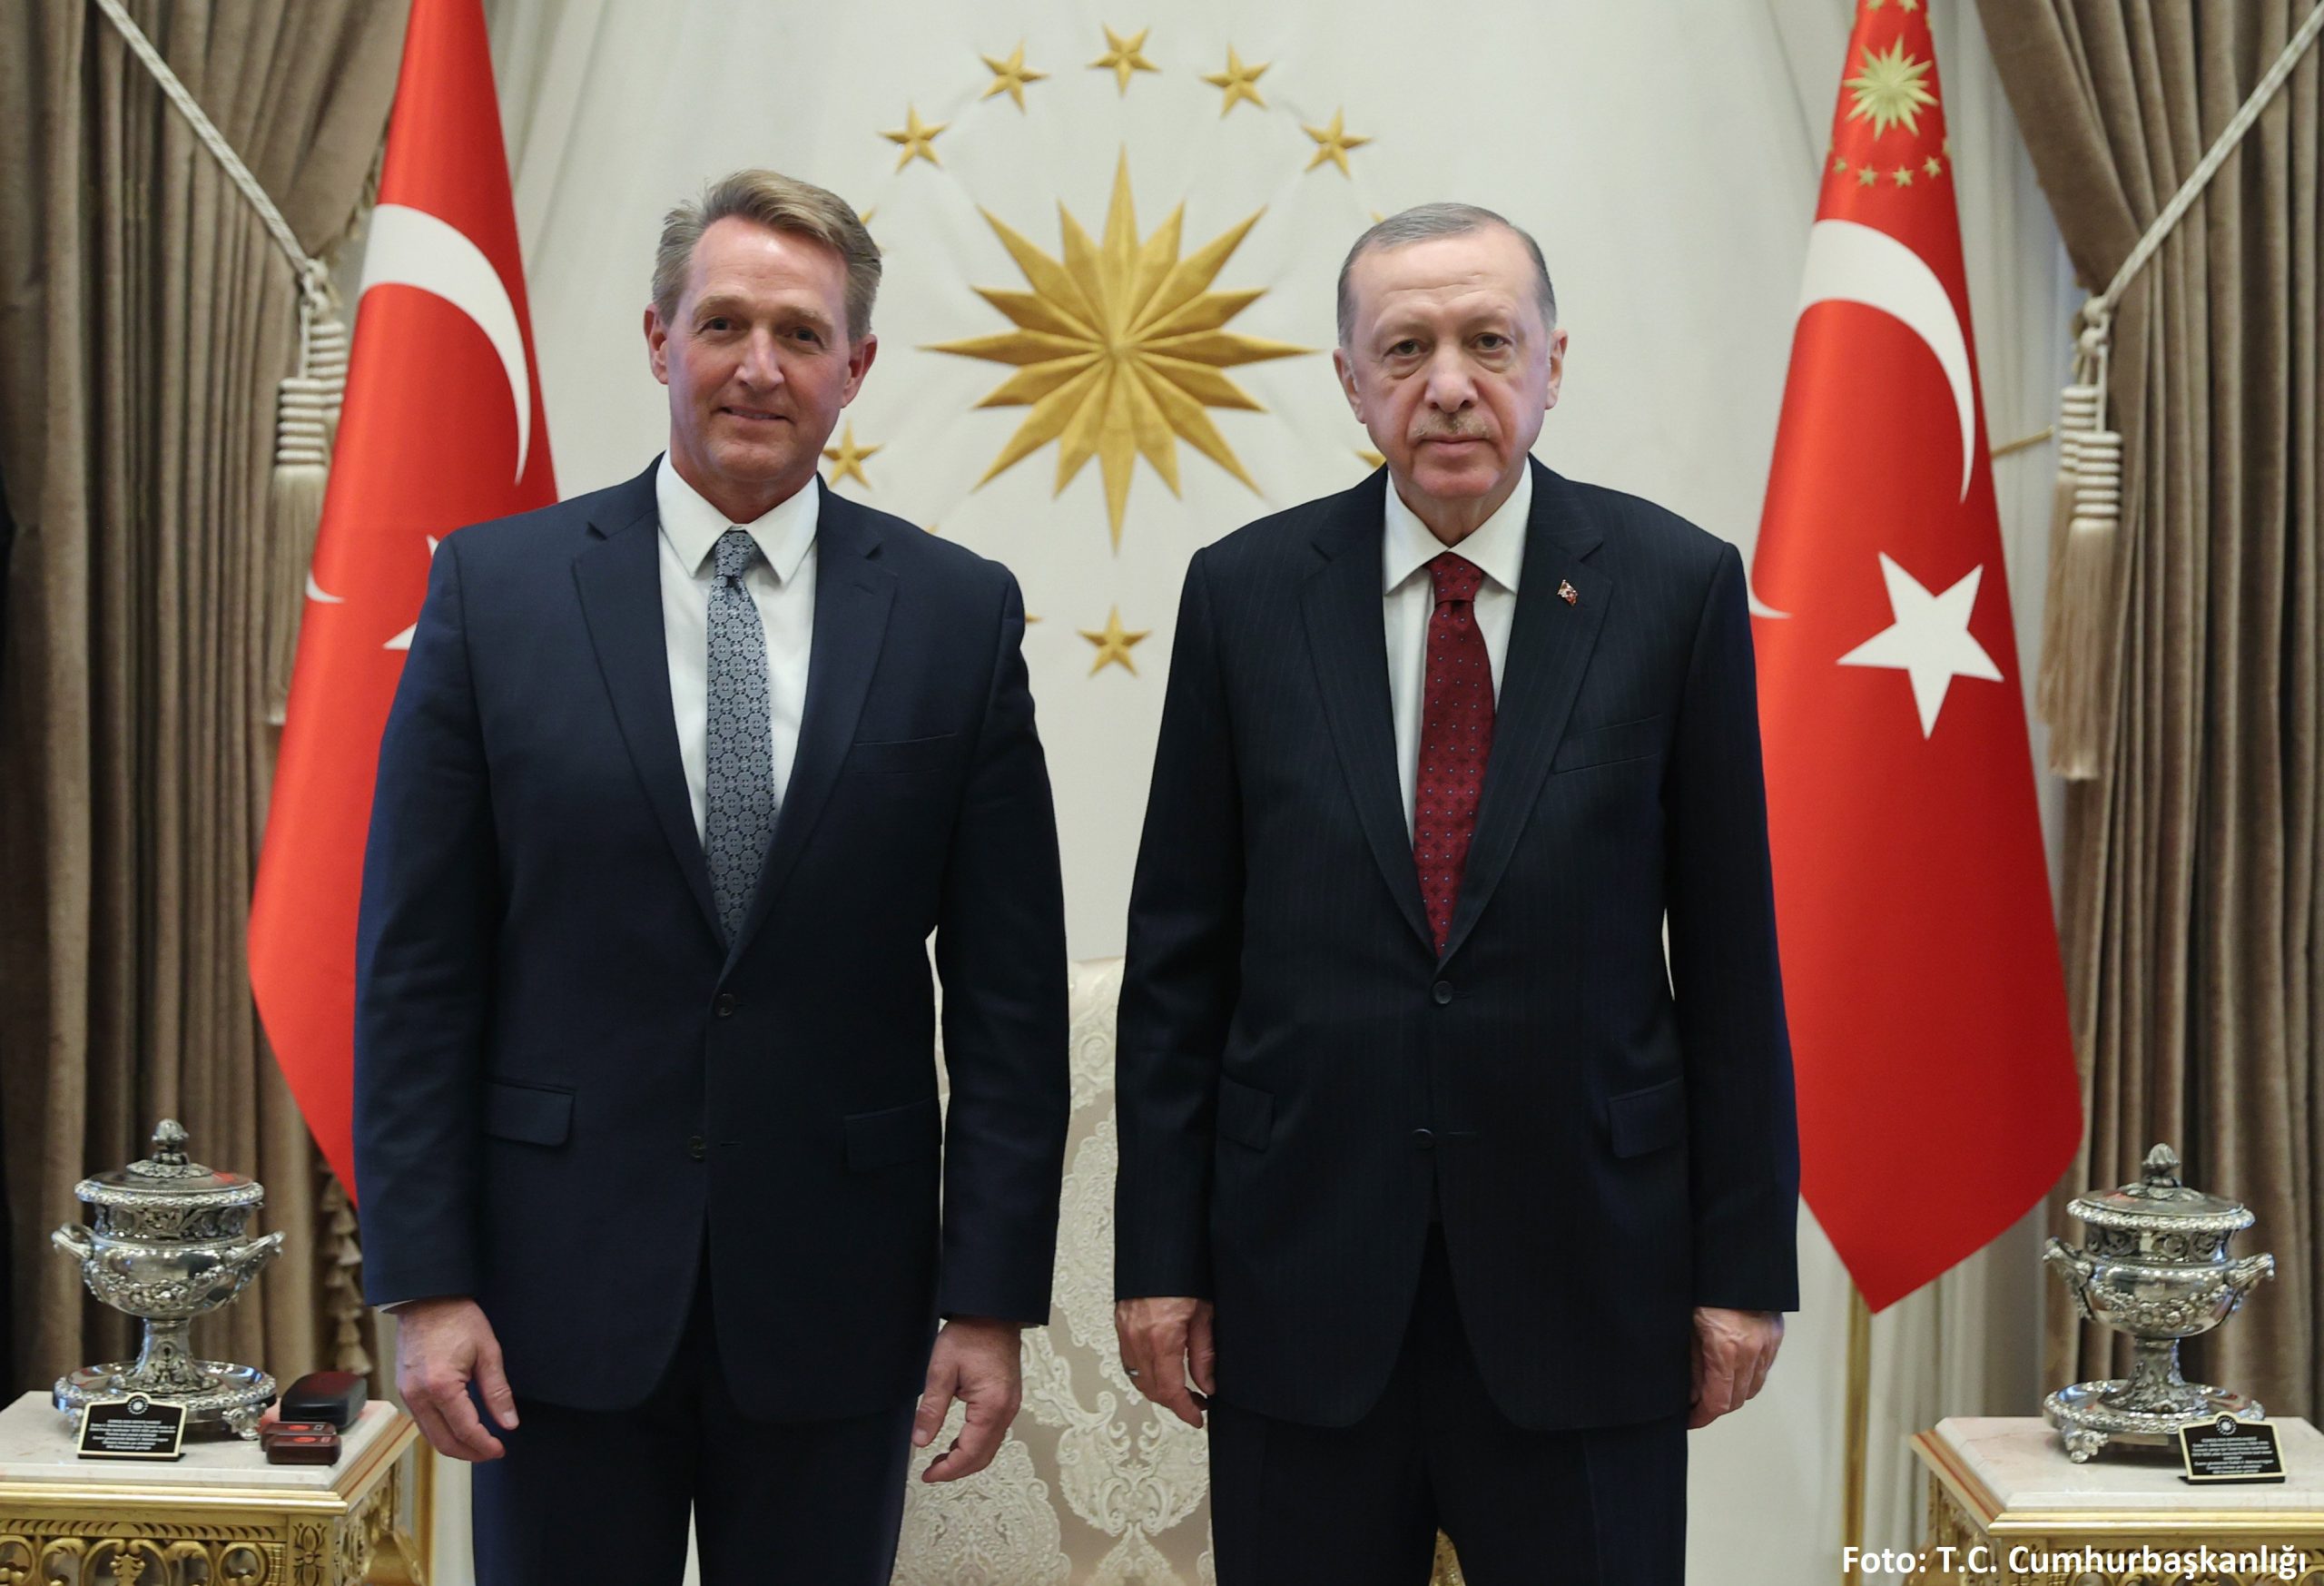 Πρέσβης των ΗΠΑ στην Άγκυρα: Δεν παίρνουμε θέση μεταξύ Τουρκίας και Ελλάδας